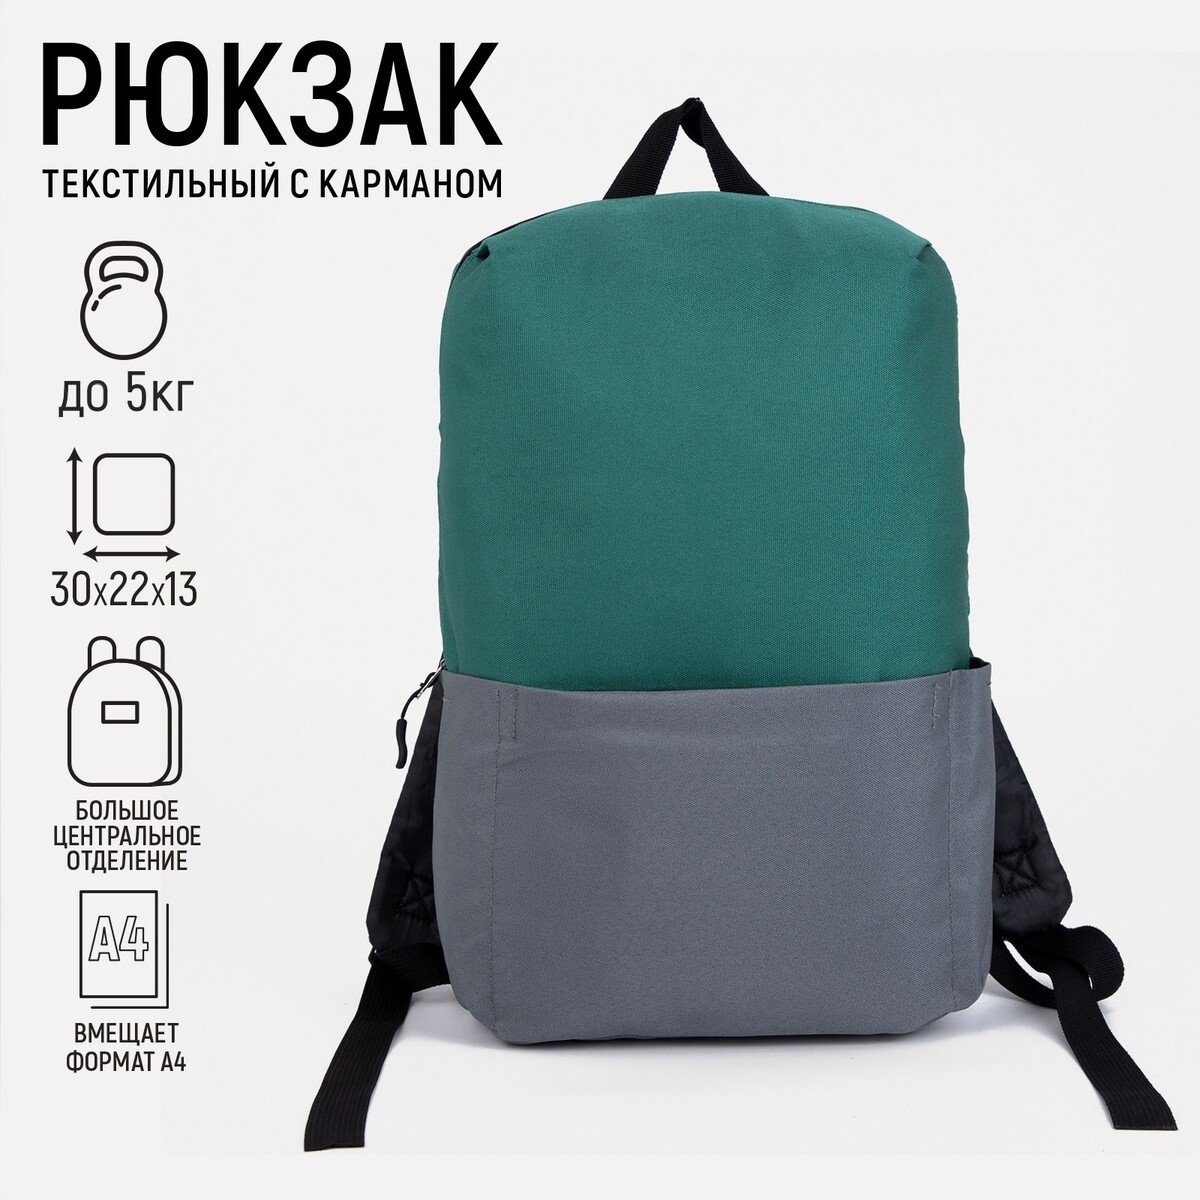 Рюкзак текстильный с карманом, серый/зеленый, 22х13х30 см рюкзак с карманом 22 см х 10 см х 30 см